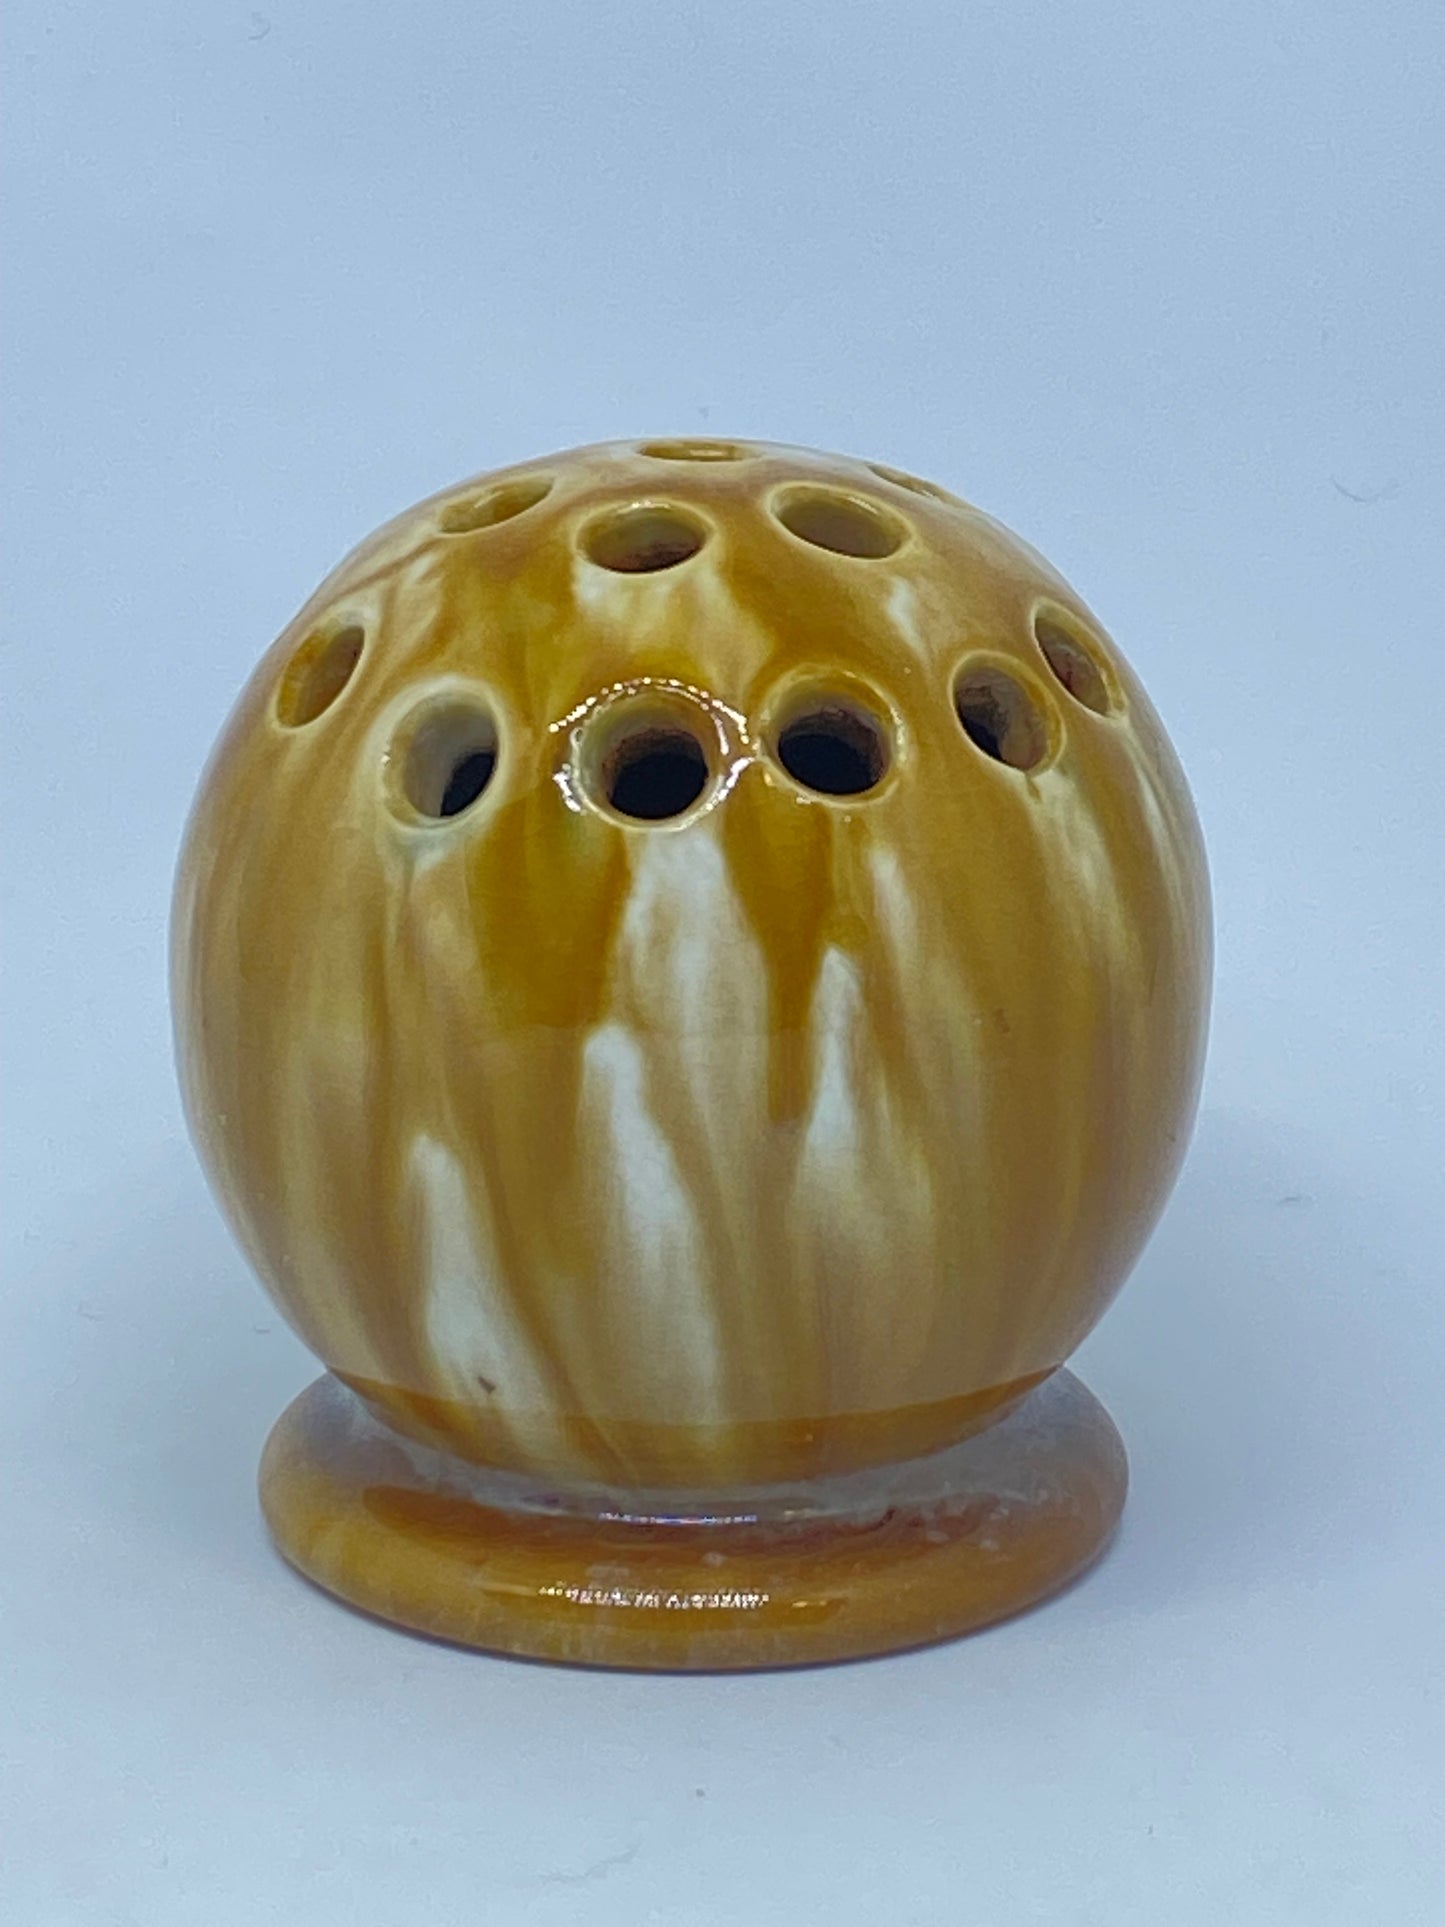 McHugh Tasmania - Shape 33 - leatherwood honey glaze vase Ball Vase